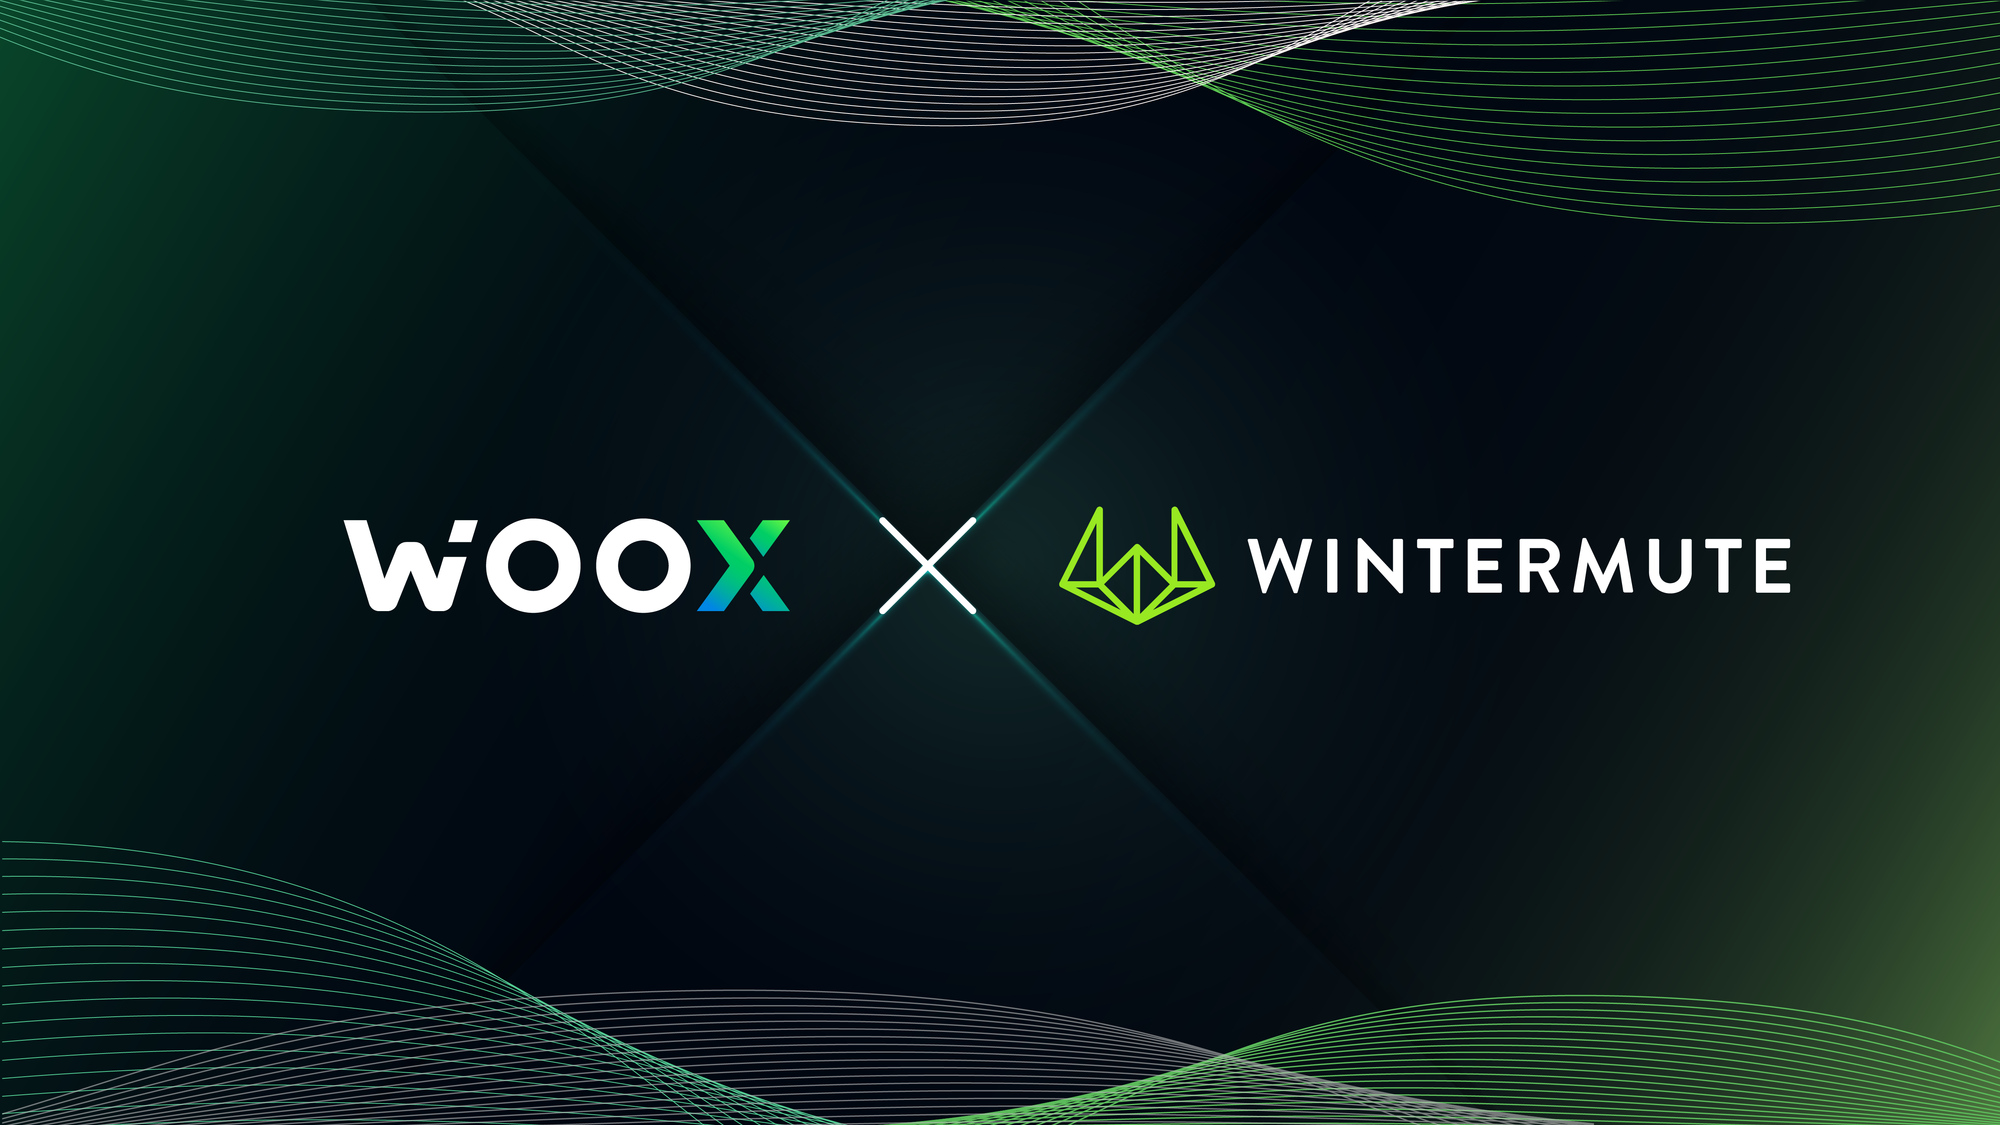 وو اكس WOO X تؤمن الشراكة مع شركة التداول الخوارزمية Wintermute